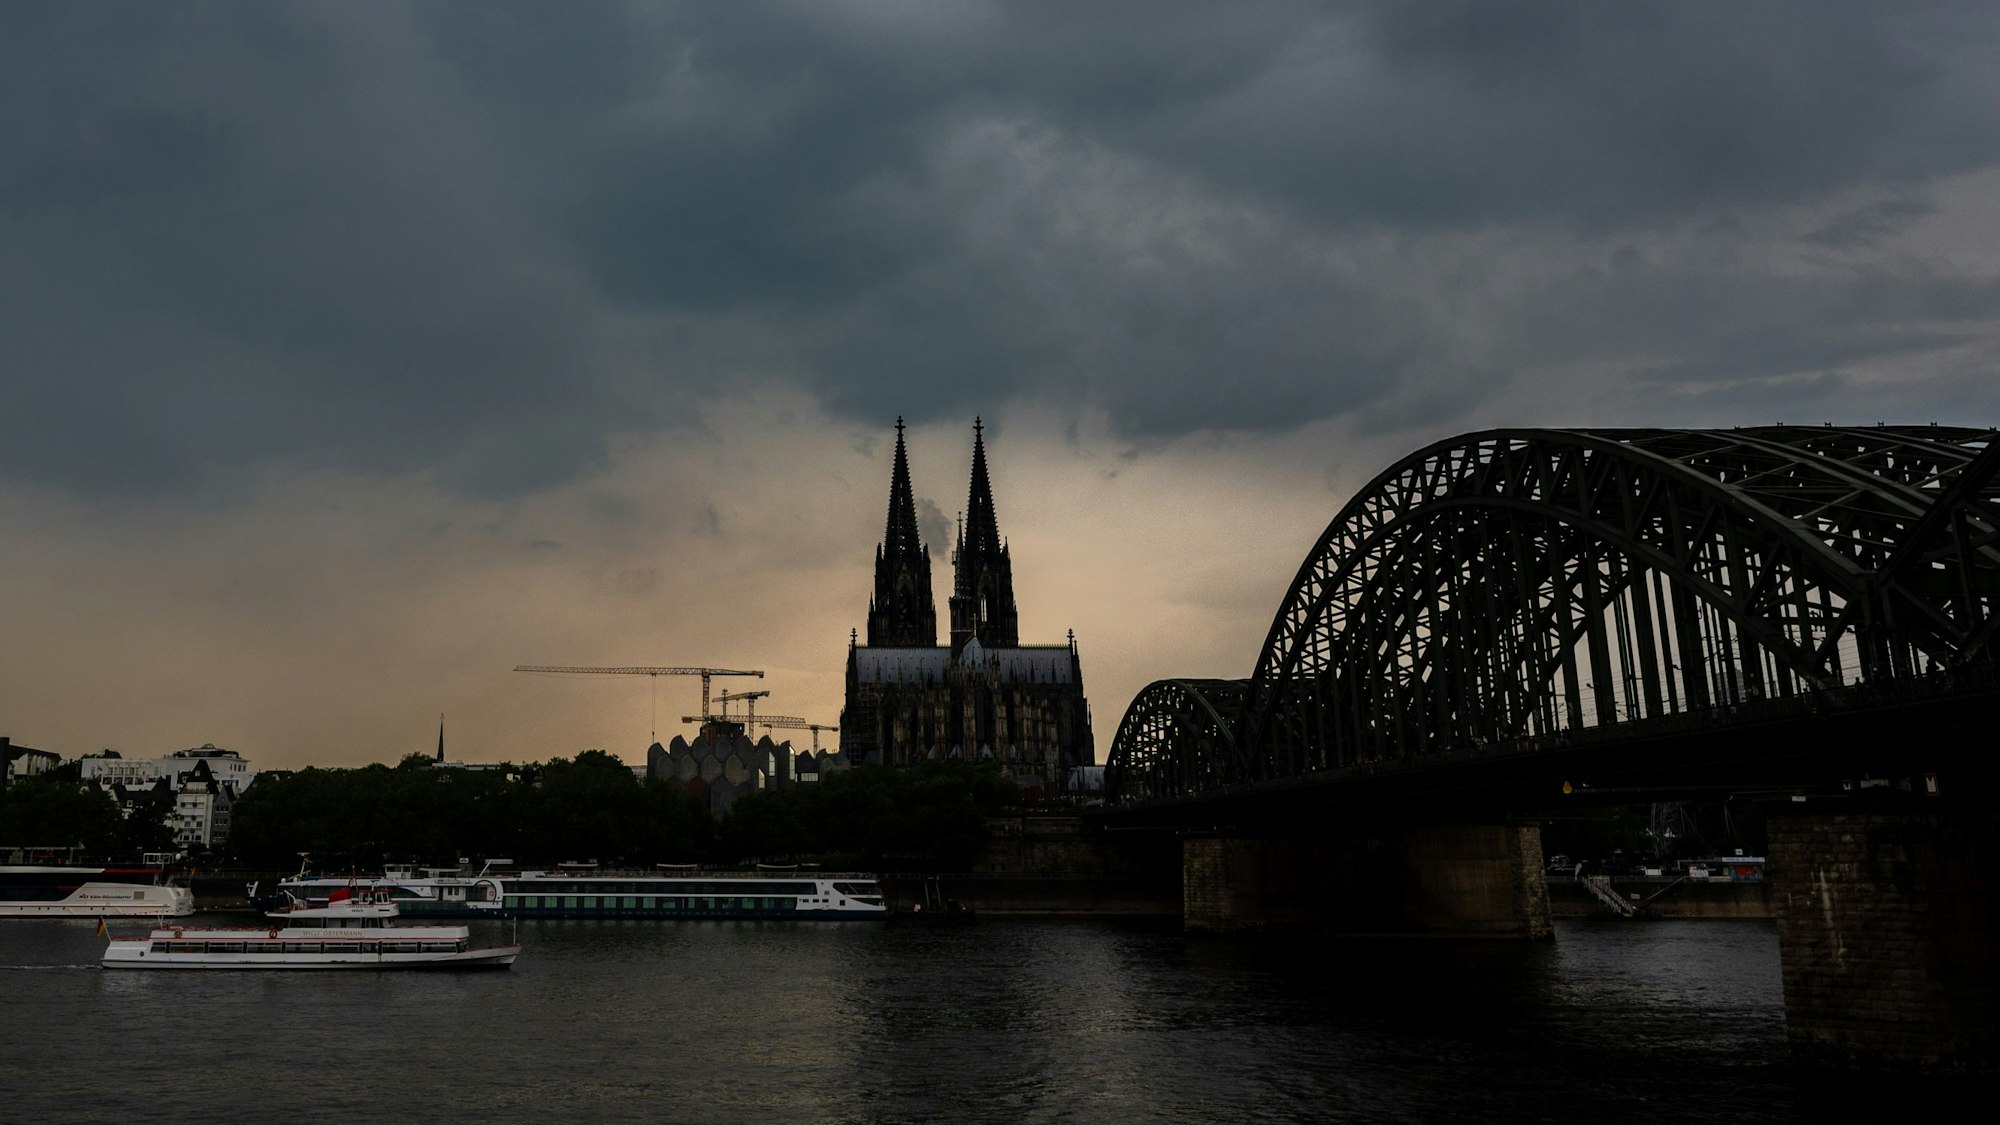 Dunkle Gewitterwolken ziehen über dem Kölner Dom auf. Außerdem ist die Hohenzollernbrücke zu sehen. (Archivbild)